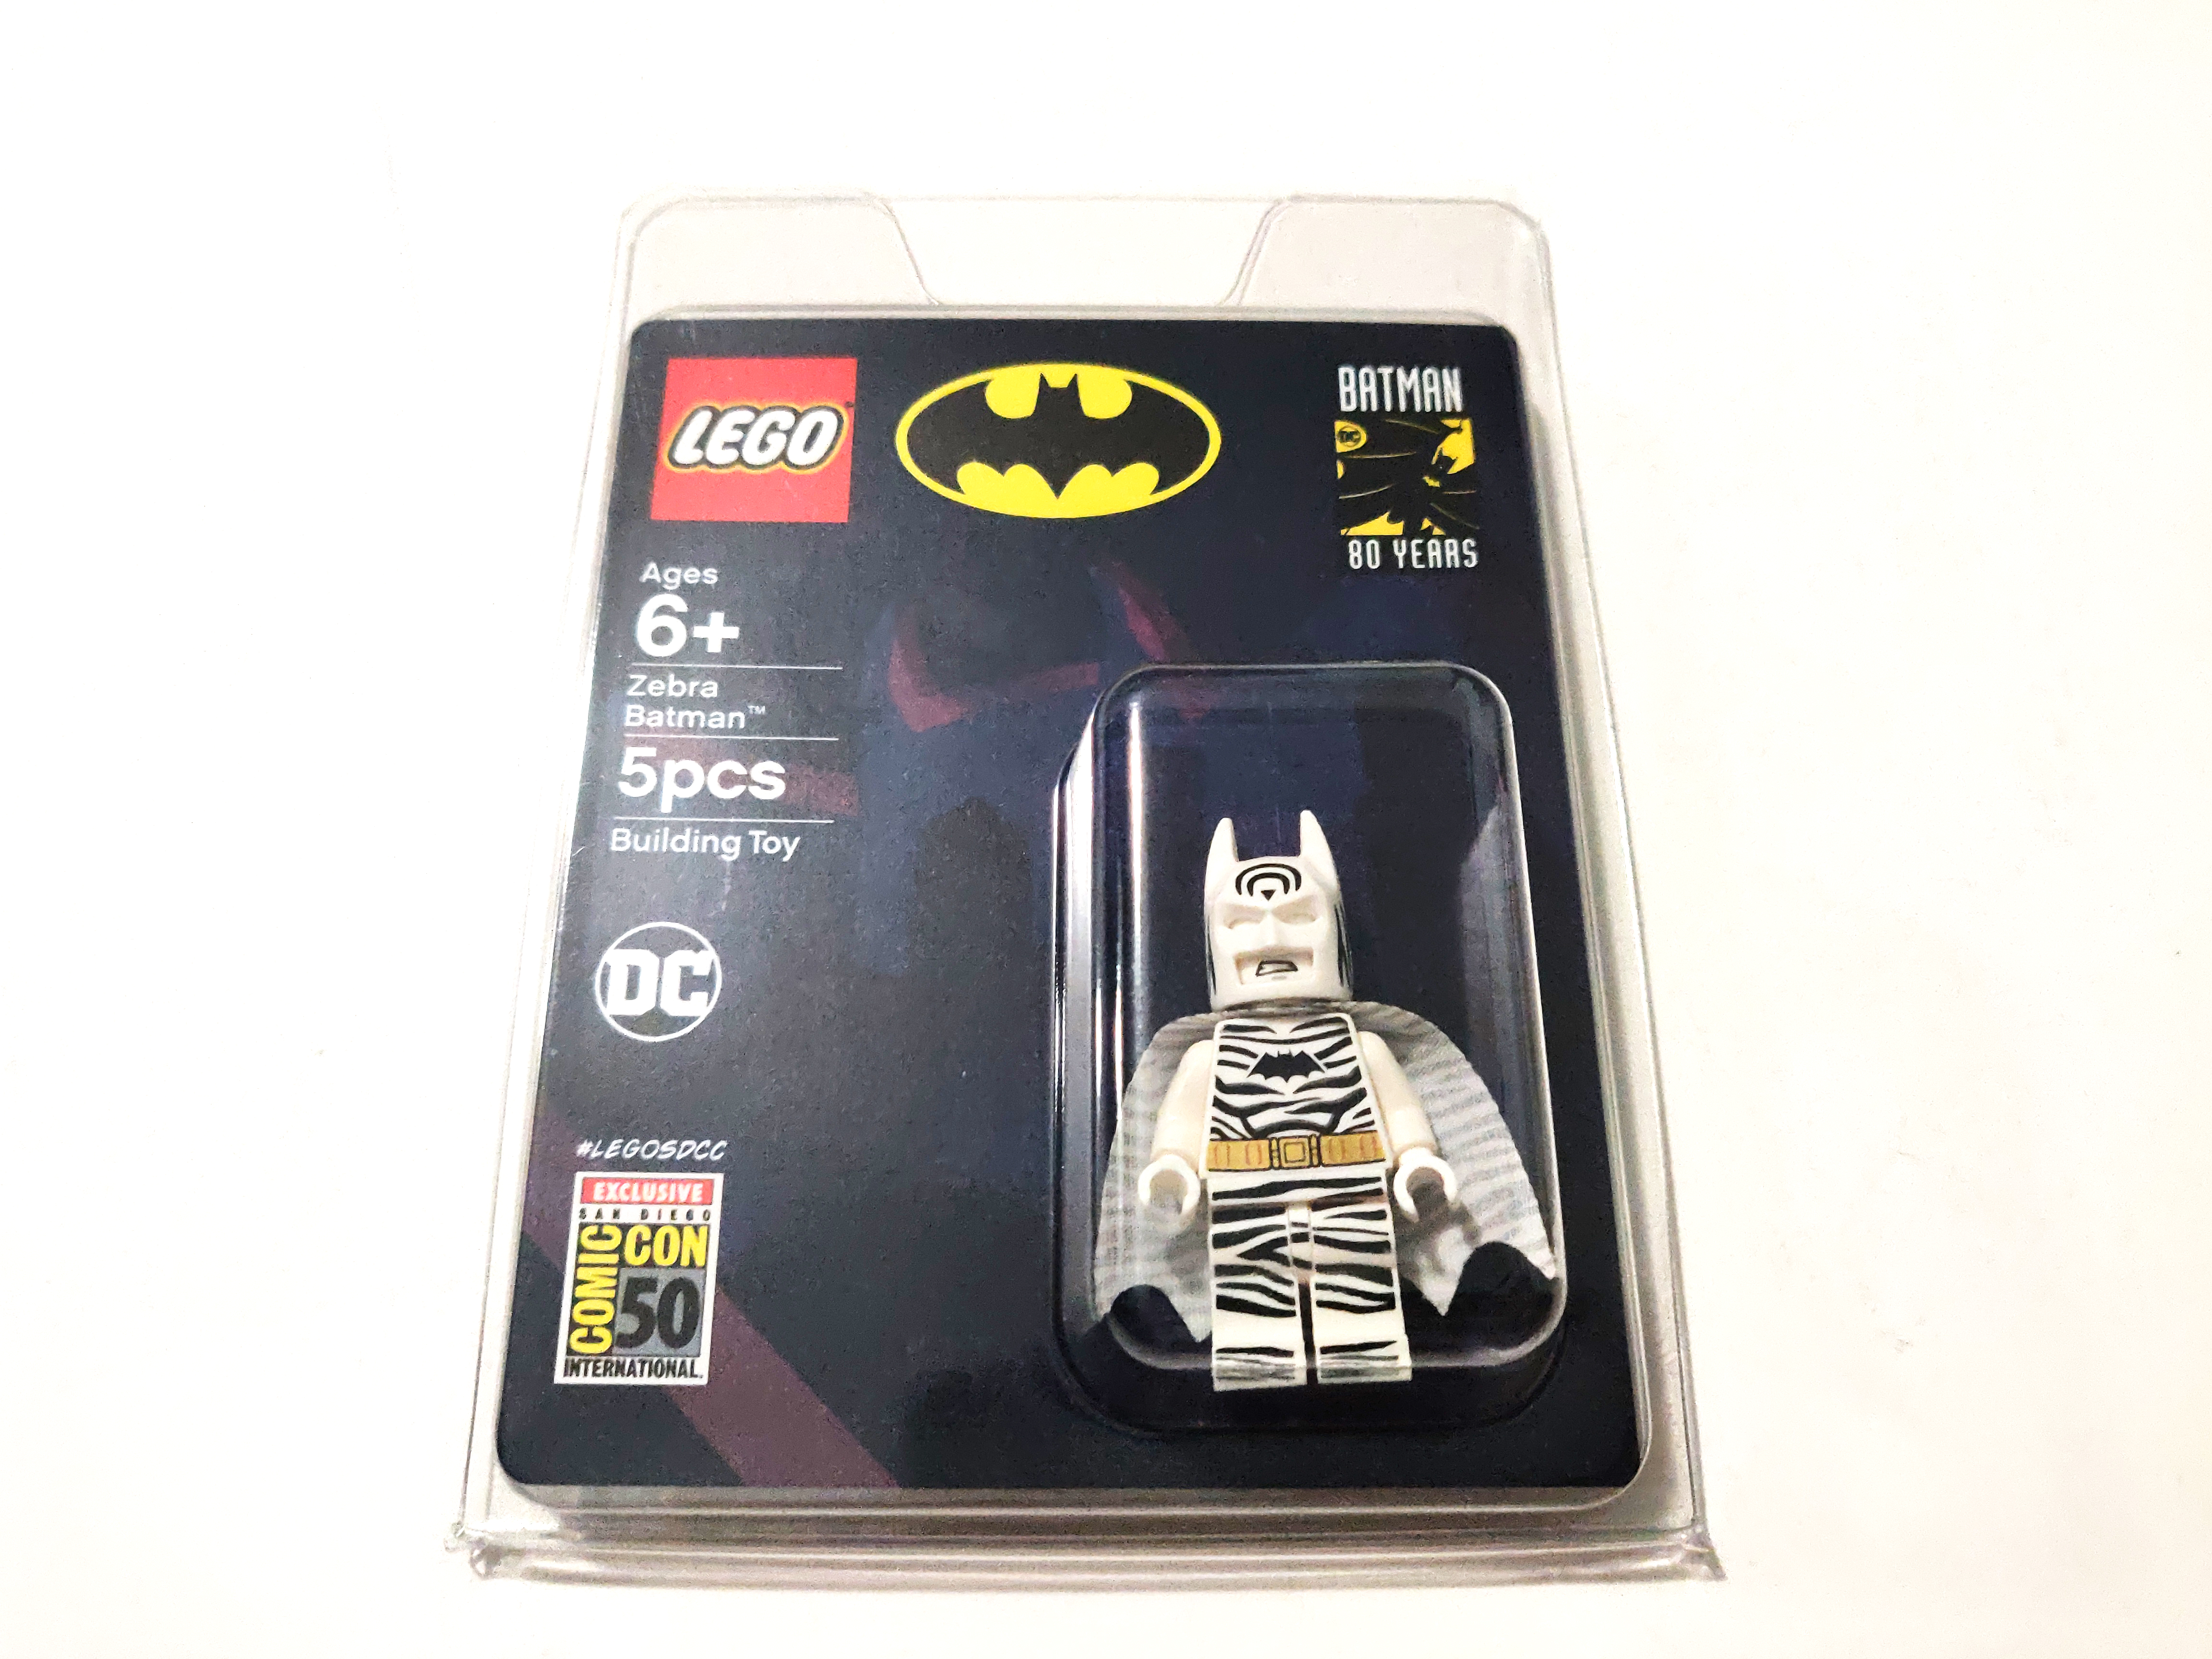 LEGO DC SDCC 2019 Zebra Batman Minifigure Review - The ...